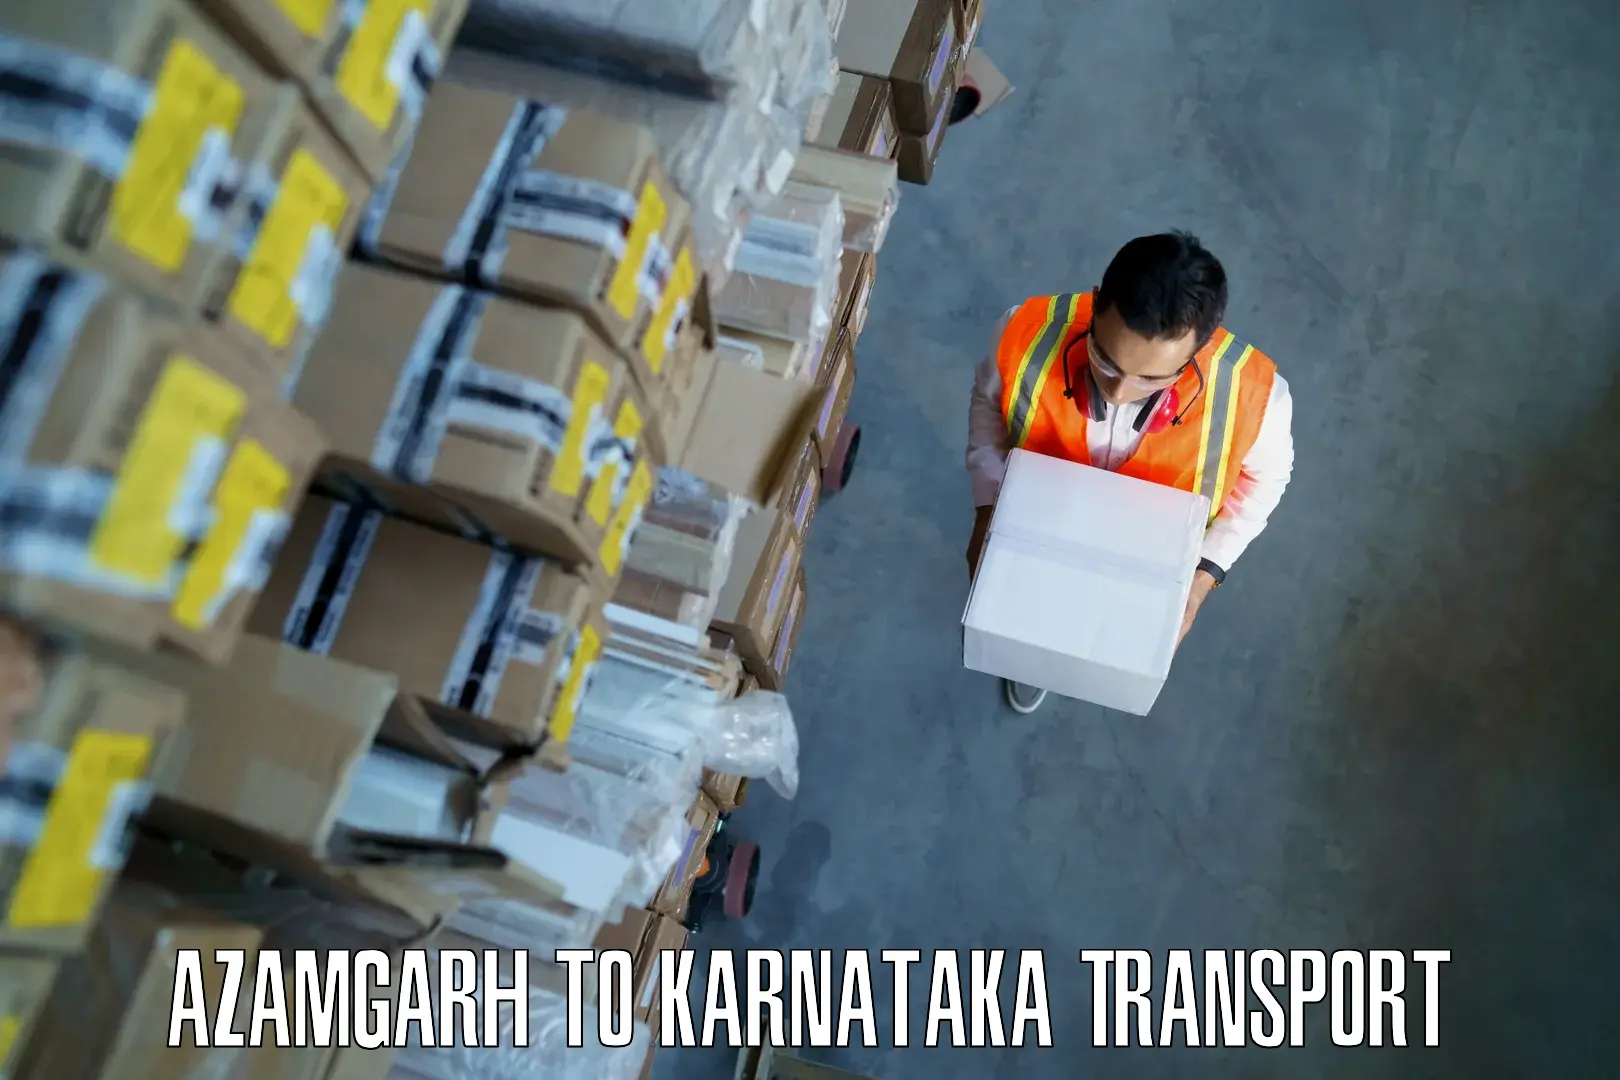 Parcel transport services Azamgarh to Srinivaspur